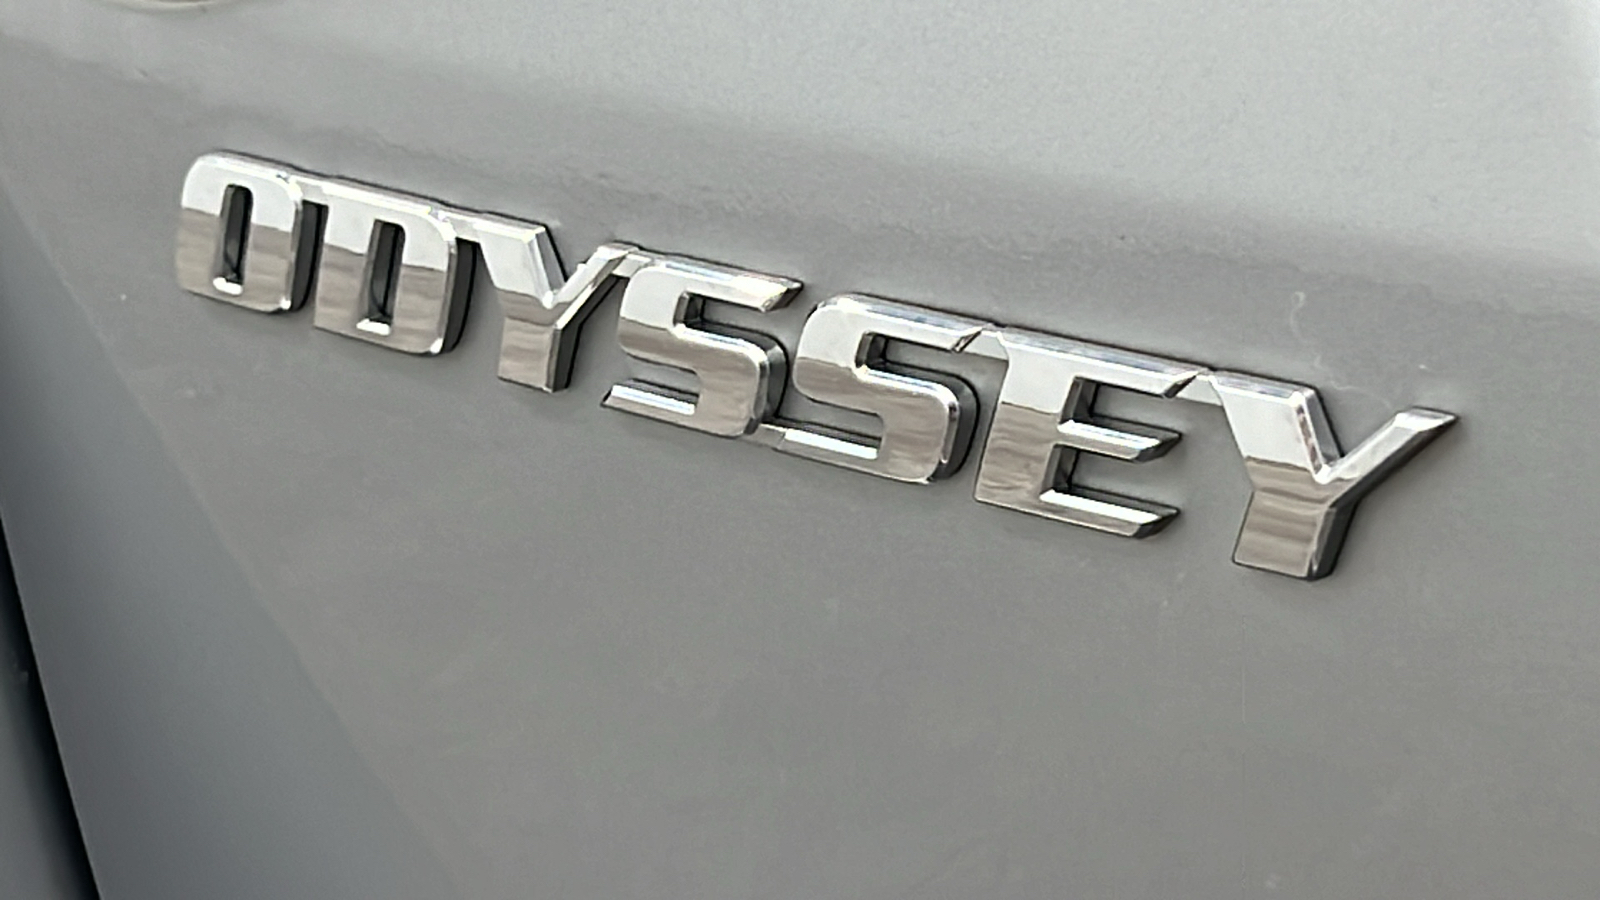 2016 Honda Odyssey SE 6